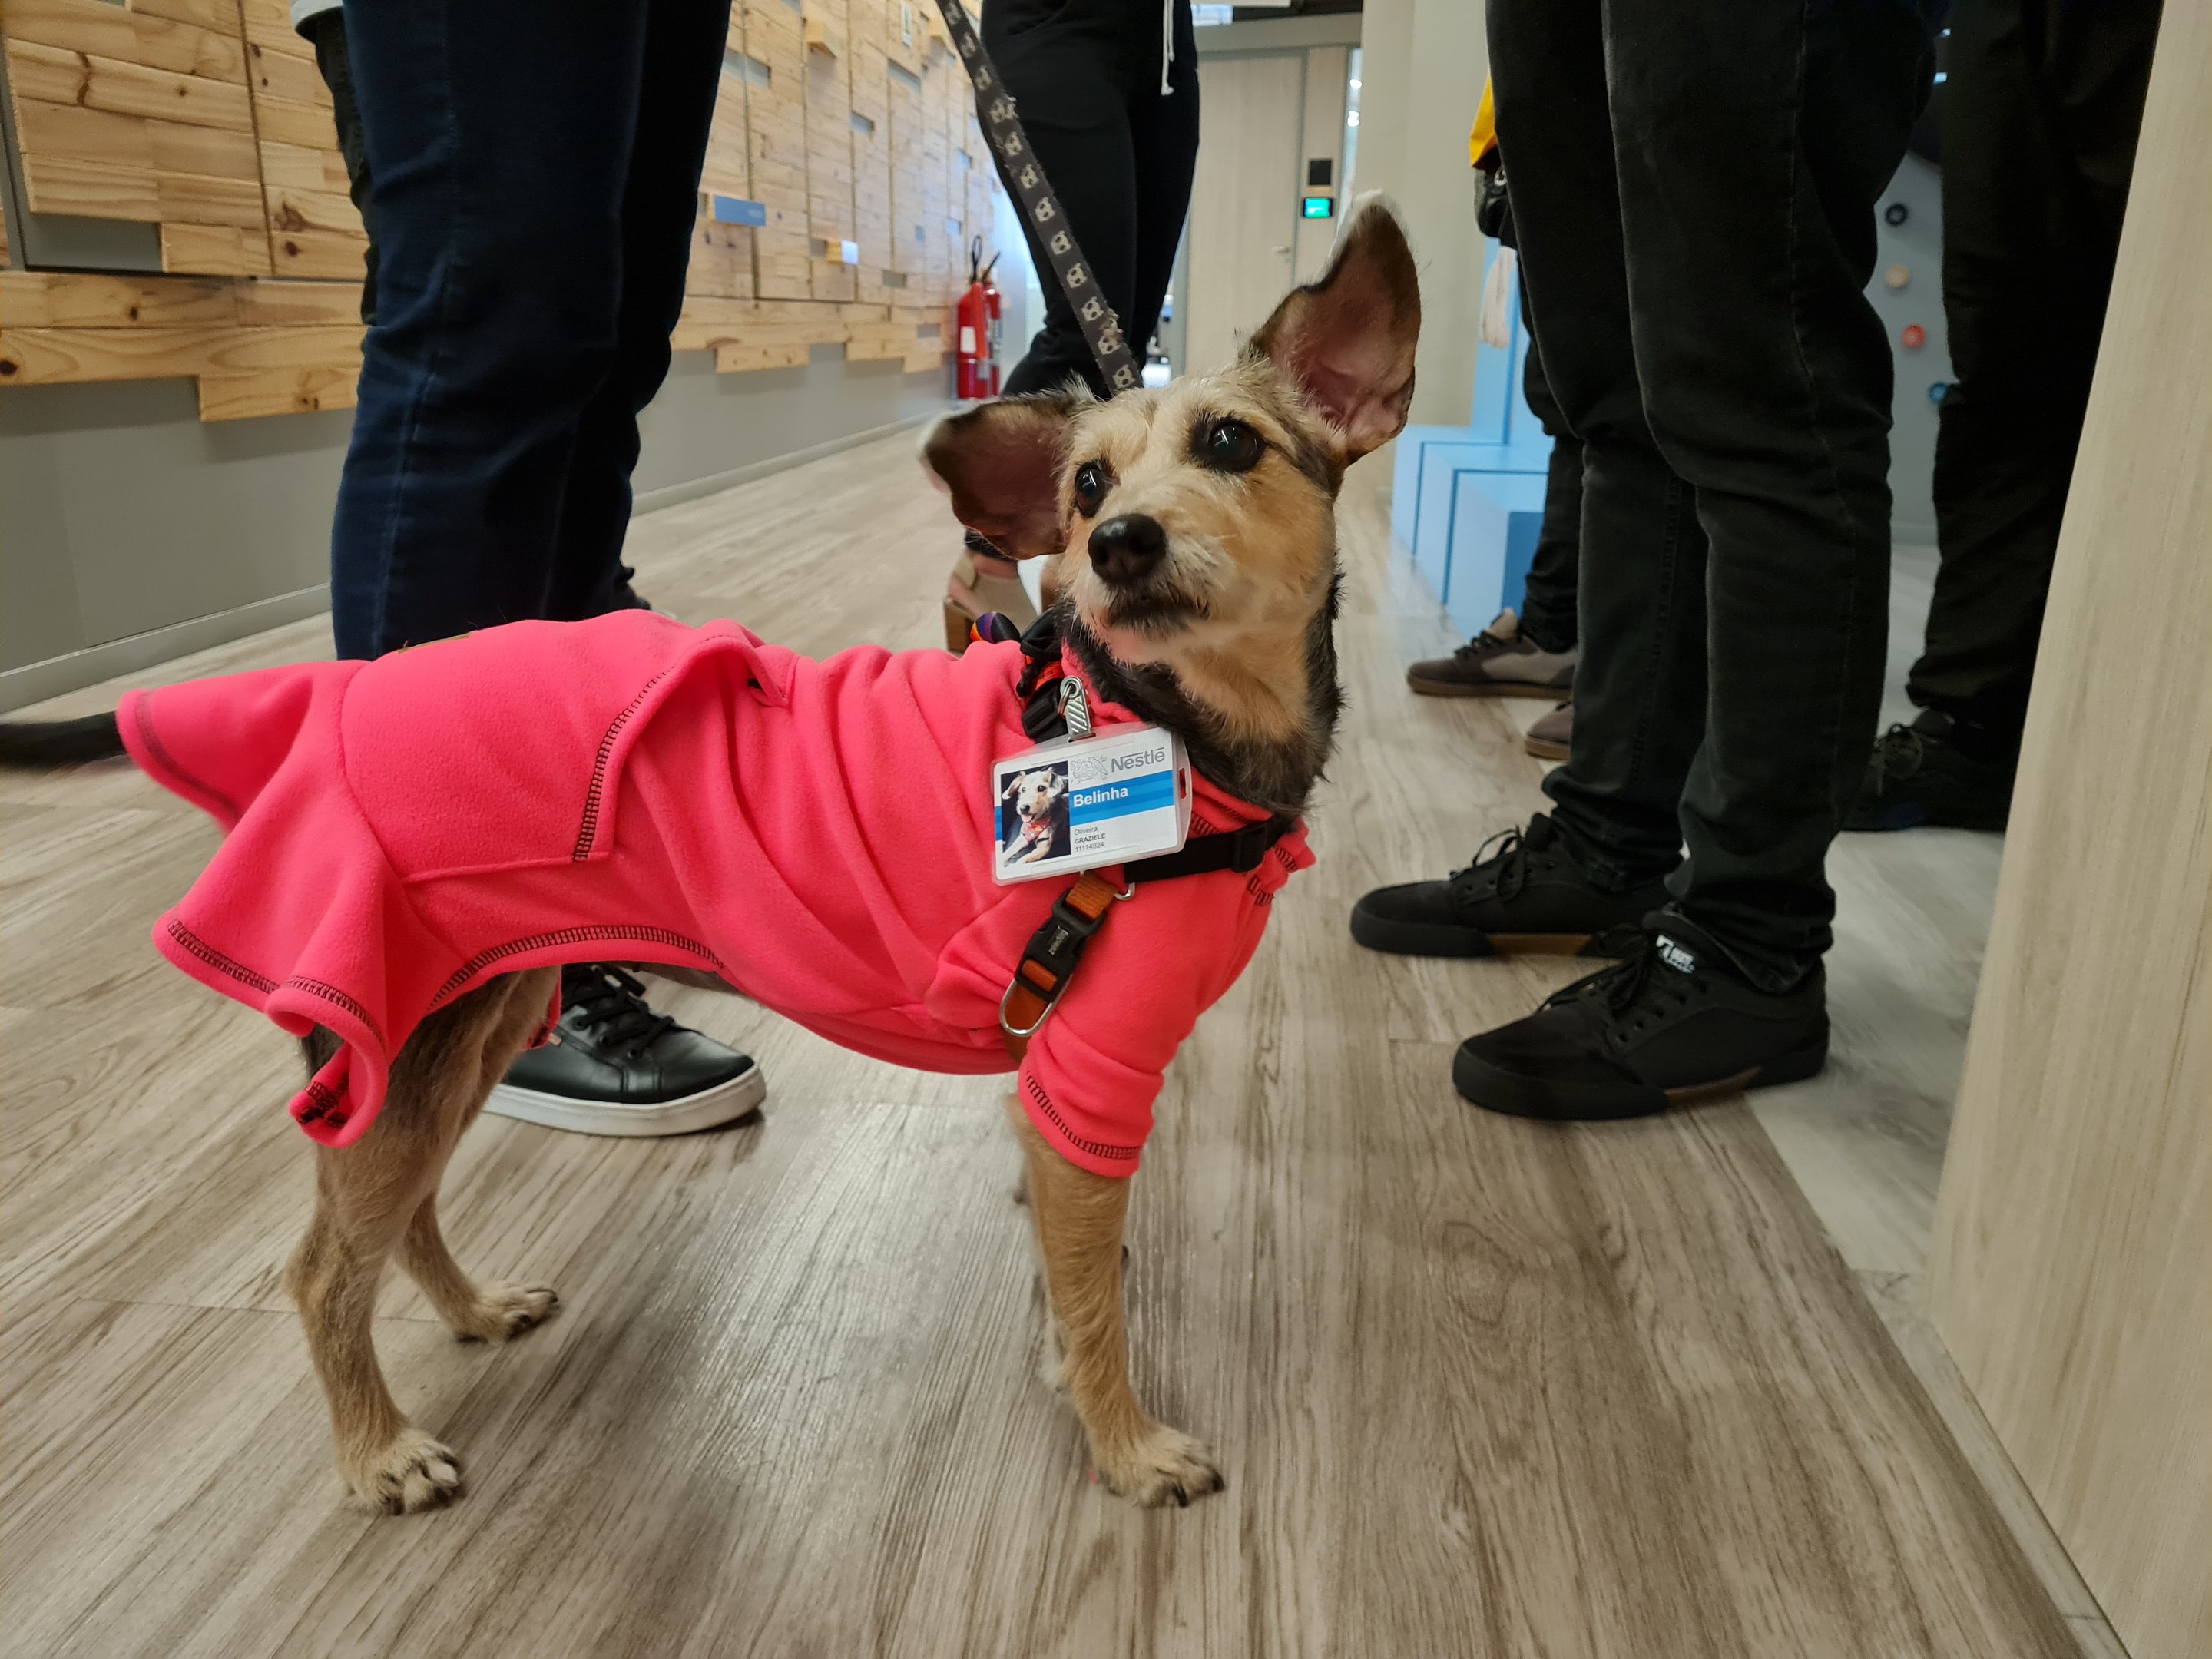 Pet chega ao escritório da Nestlé para um dia de trabalho